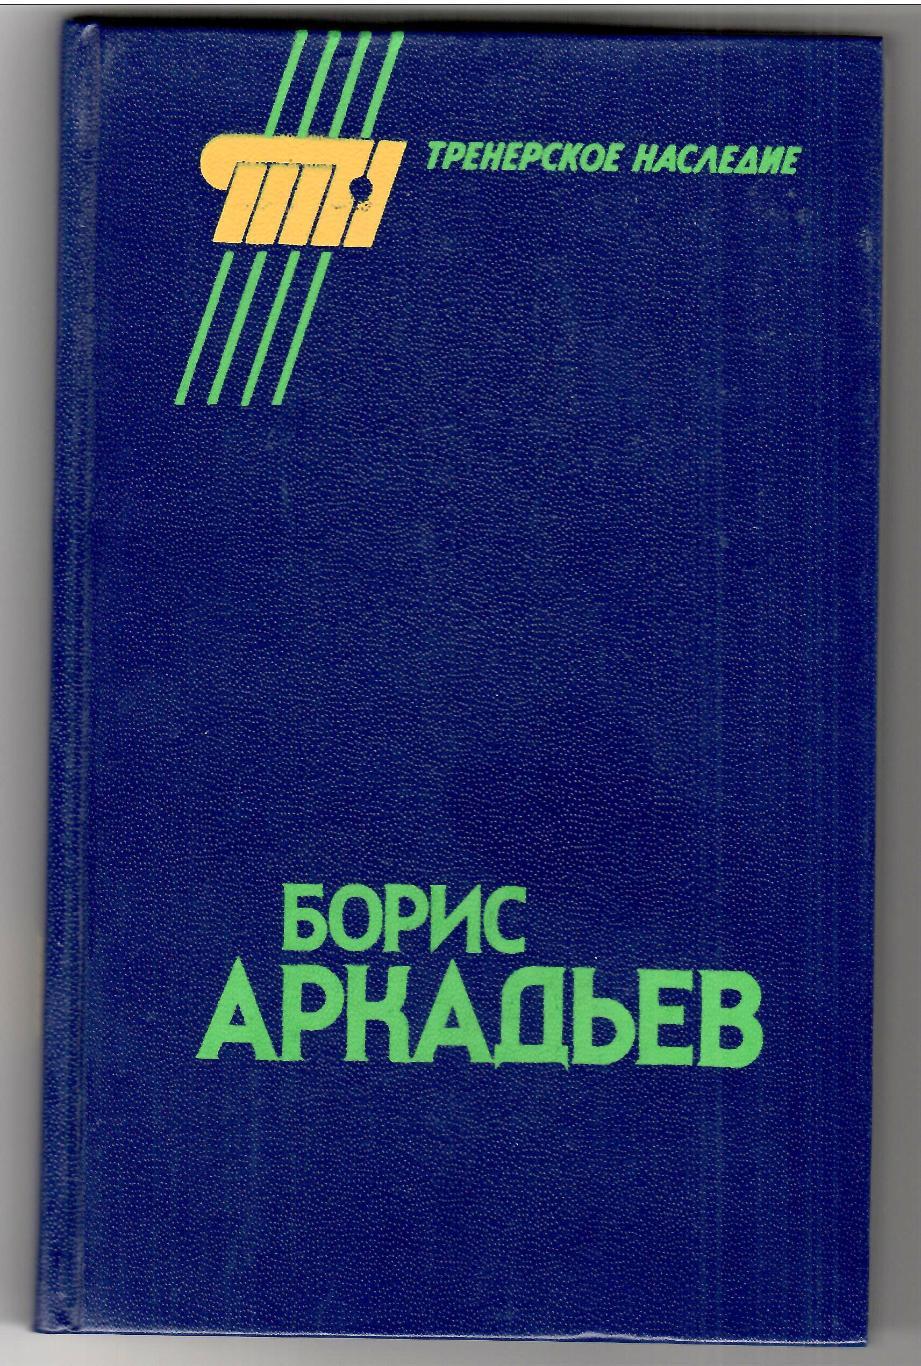 Сборник: Борис Аркадьев